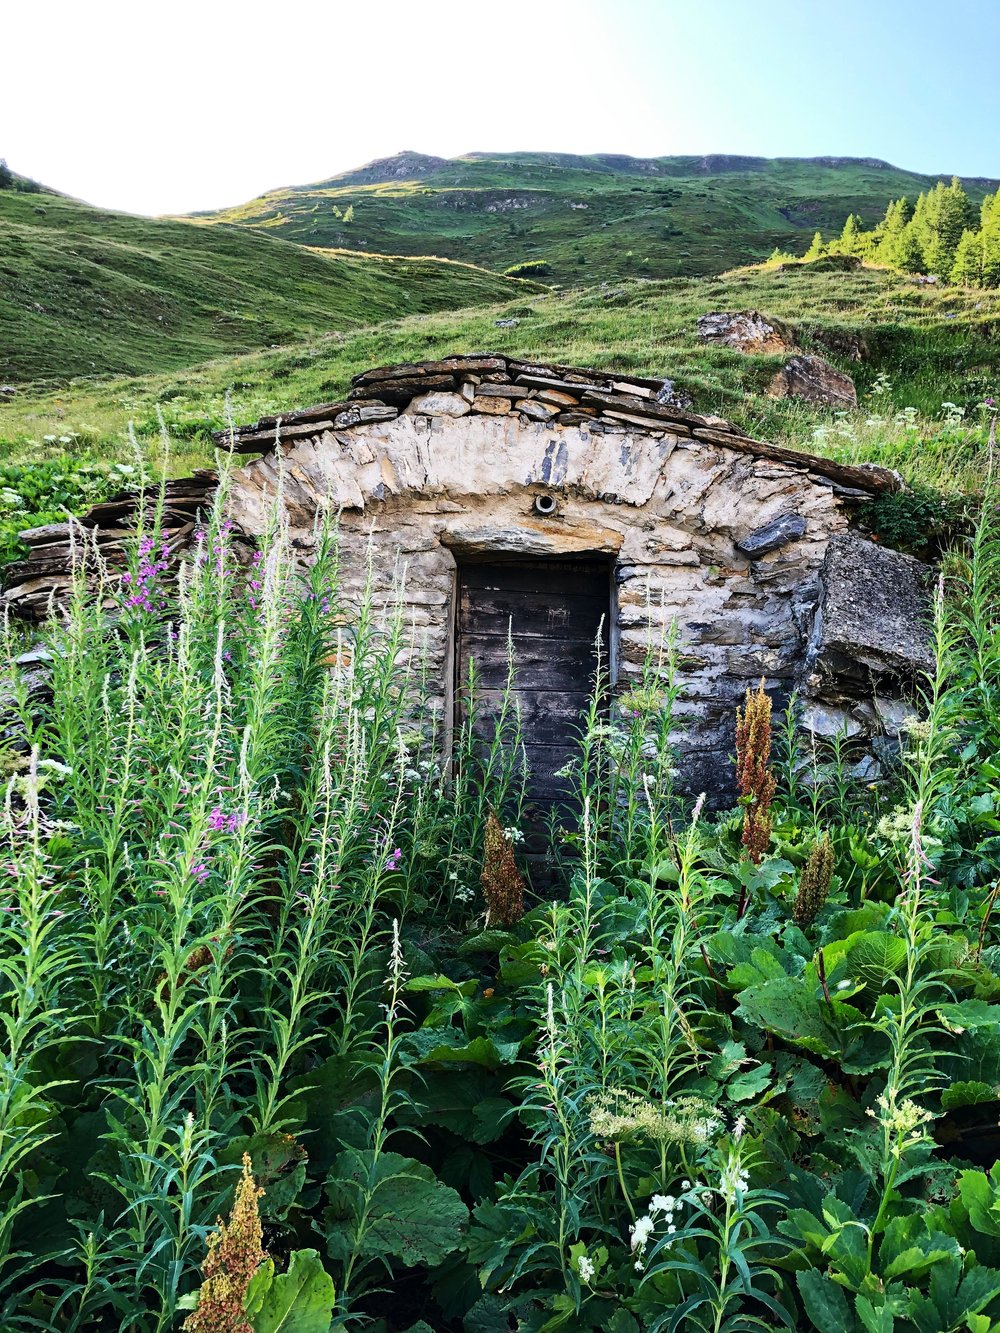  A hillside hut in Val Ferret, Italy.  